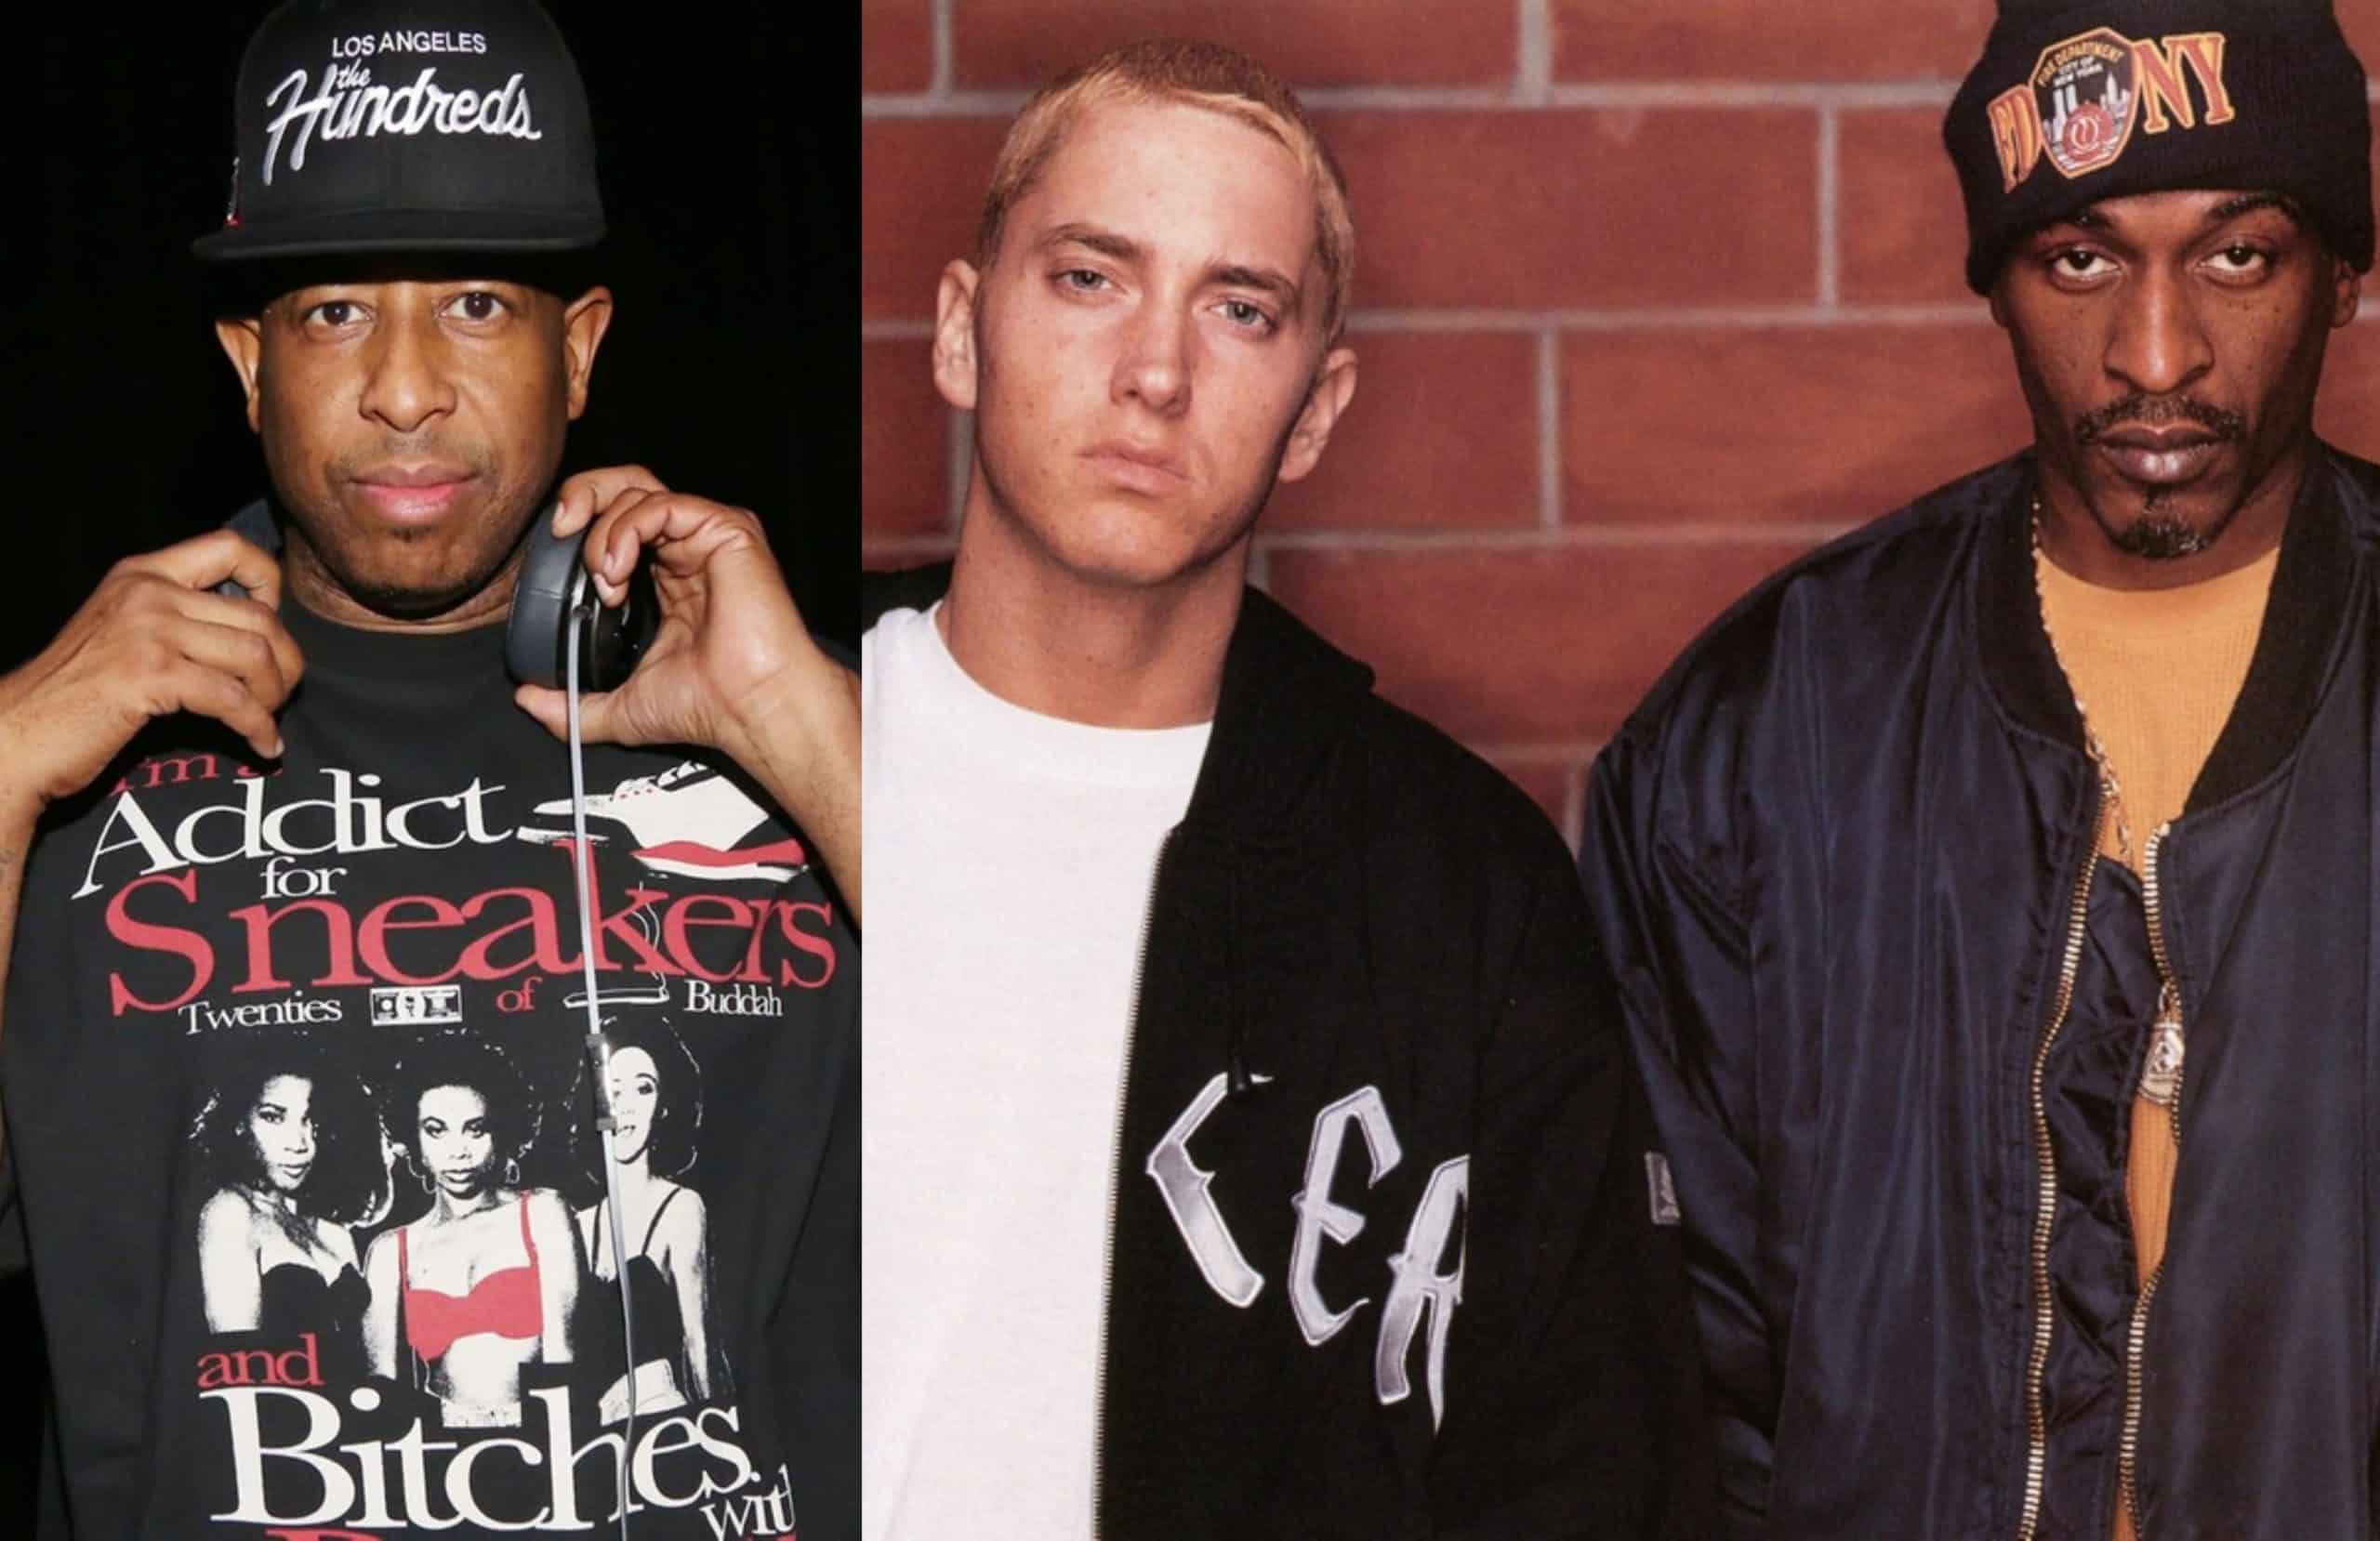 DJ Premier Shouts Out Eminem and Rakim on IG